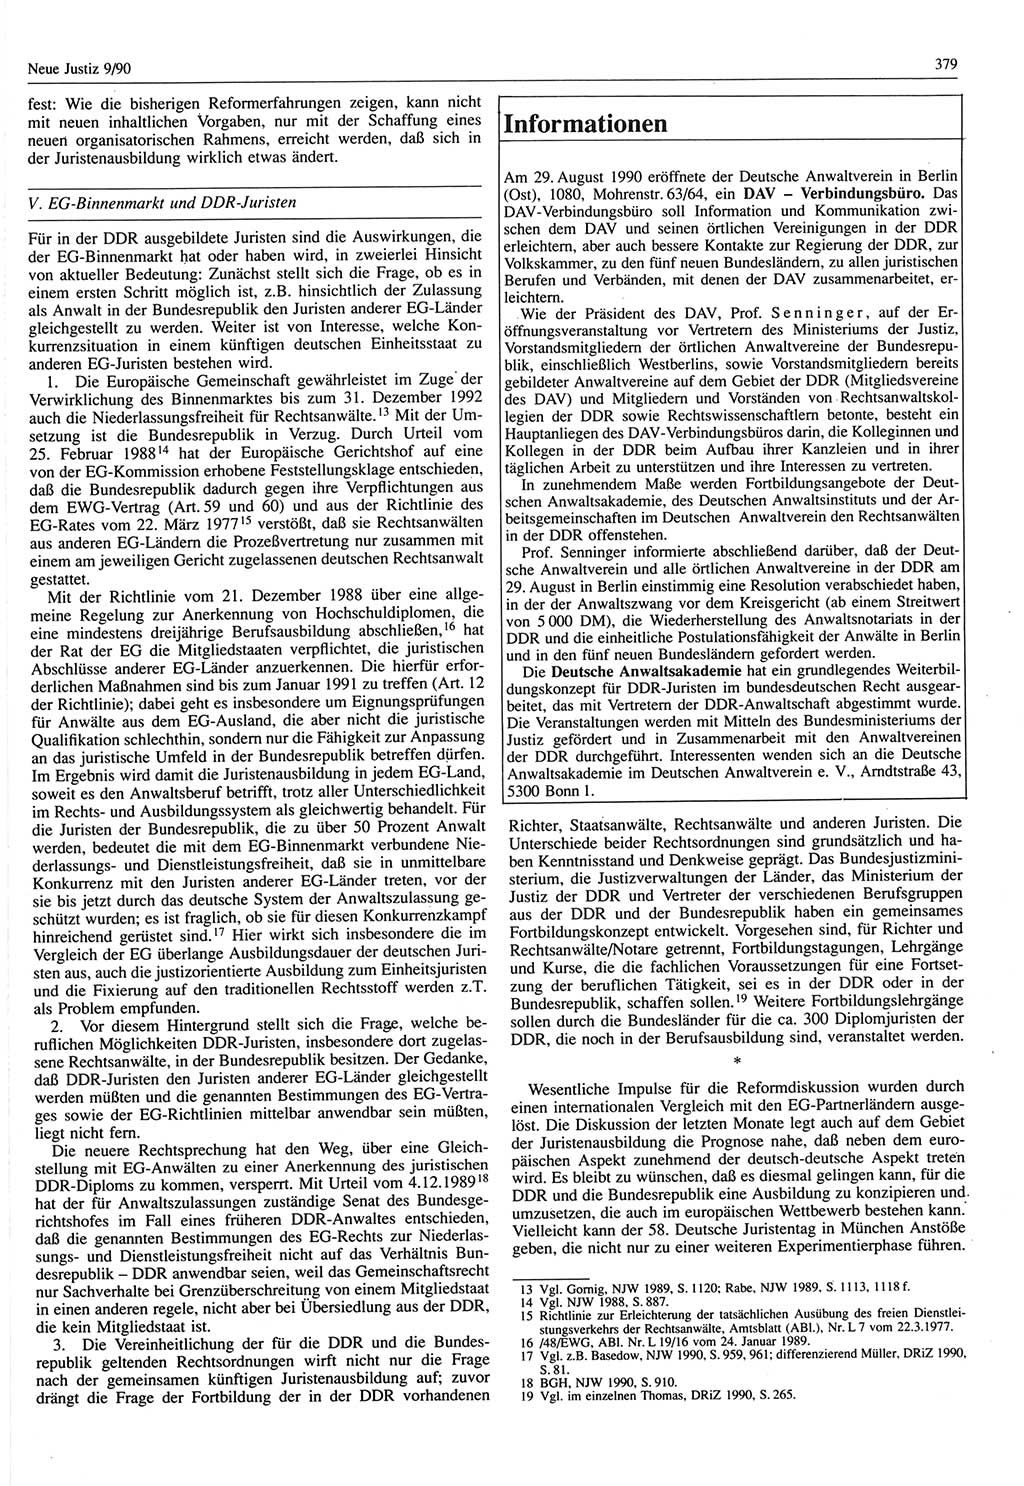 Neue Justiz (NJ), Zeitschrift für Rechtsetzung und Rechtsanwendung [Deutsche Demokratische Republik (DDR)], 44. Jahrgang 1990, Seite 379 (NJ DDR 1990, S. 379)